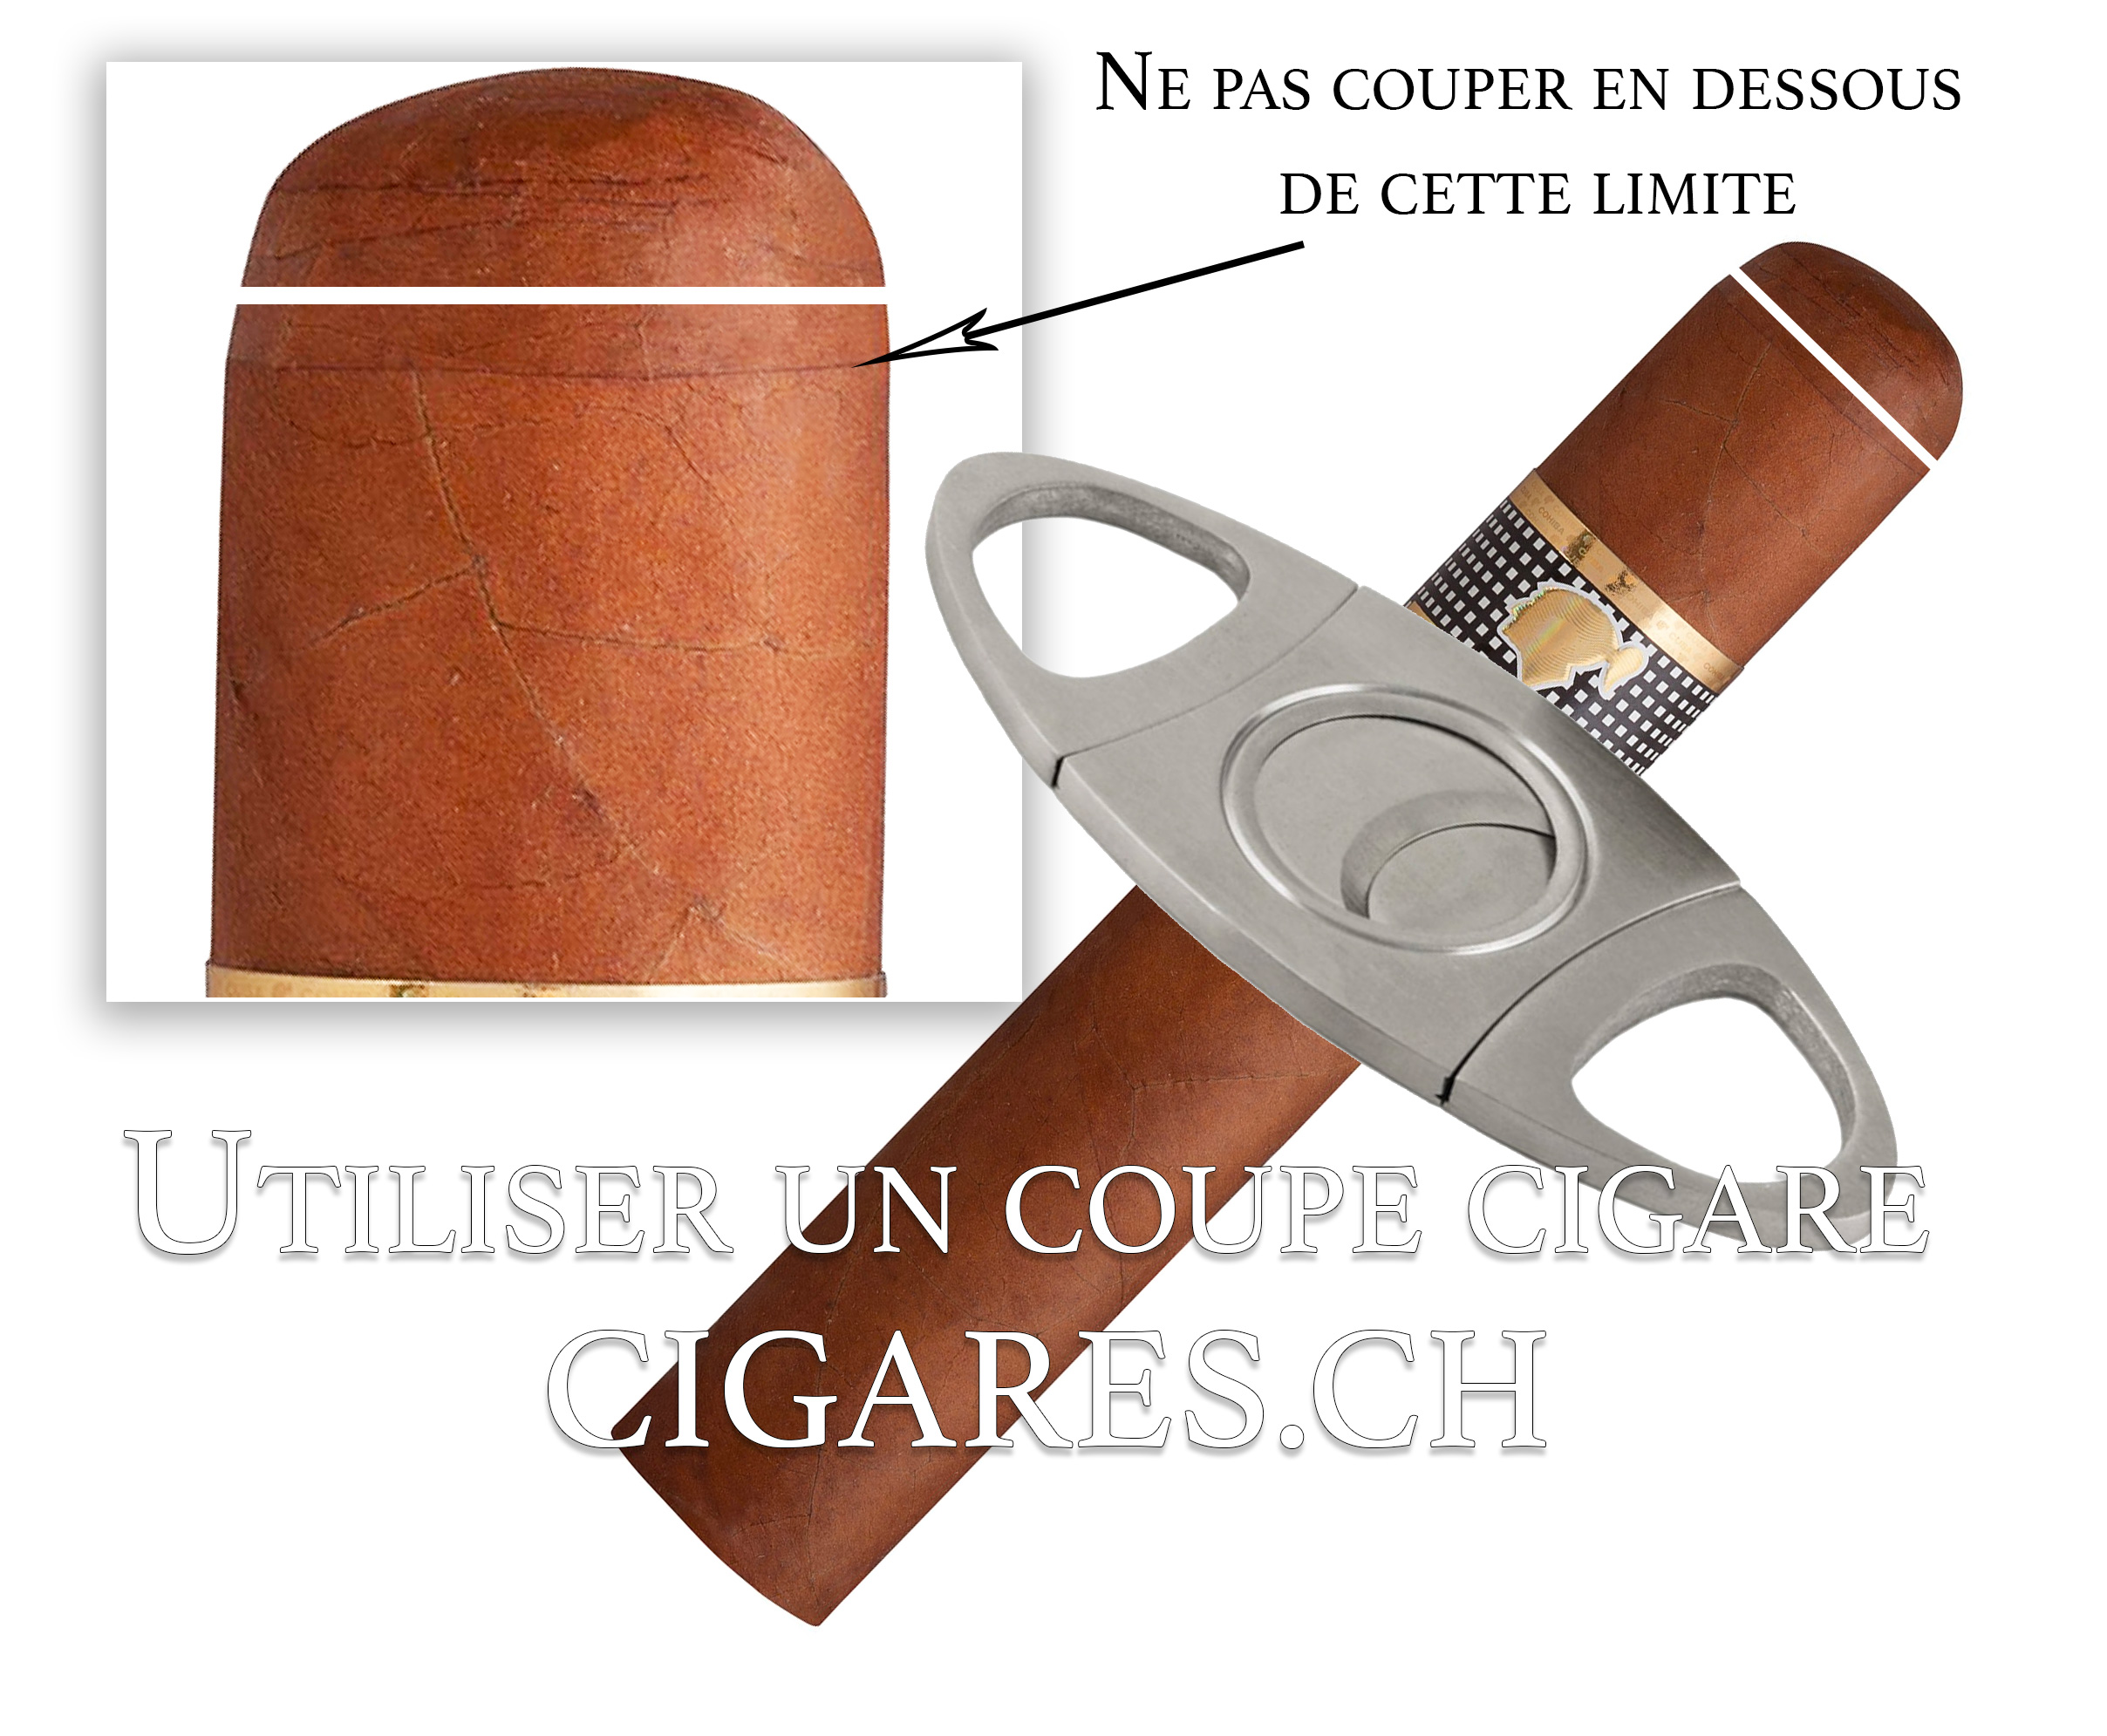 Coupe cigare : comment bien l'utiliser